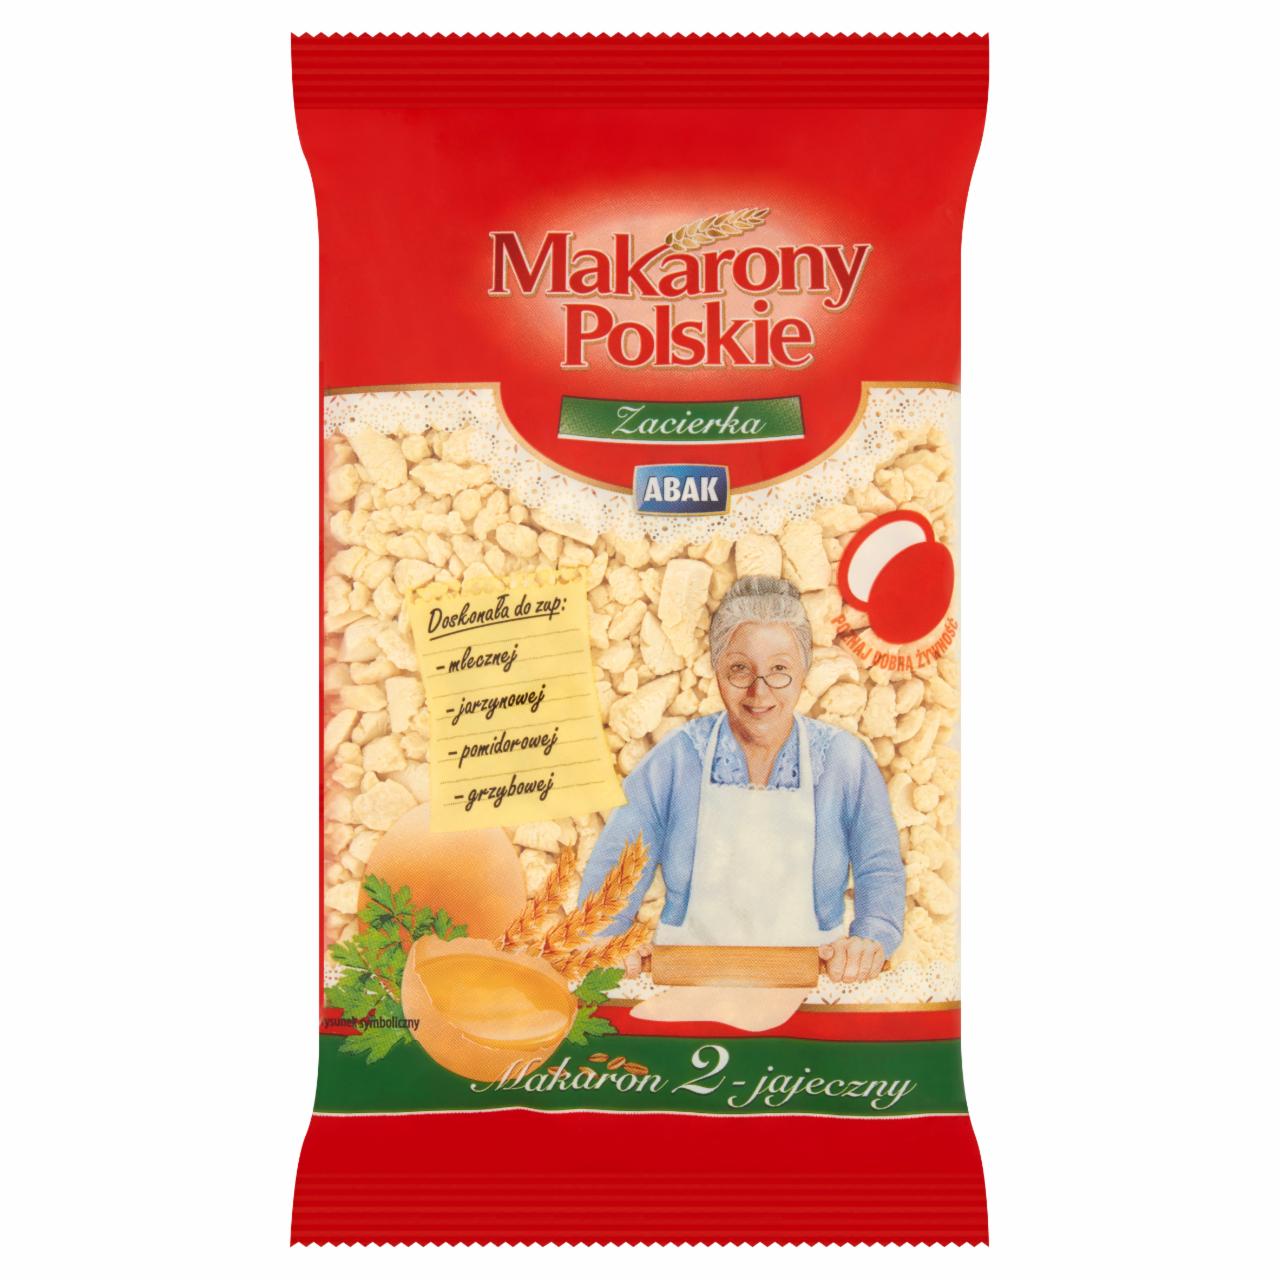 Zdjęcia - Makarony Polskie Makaron 2-jajeczny zacierka 250 g